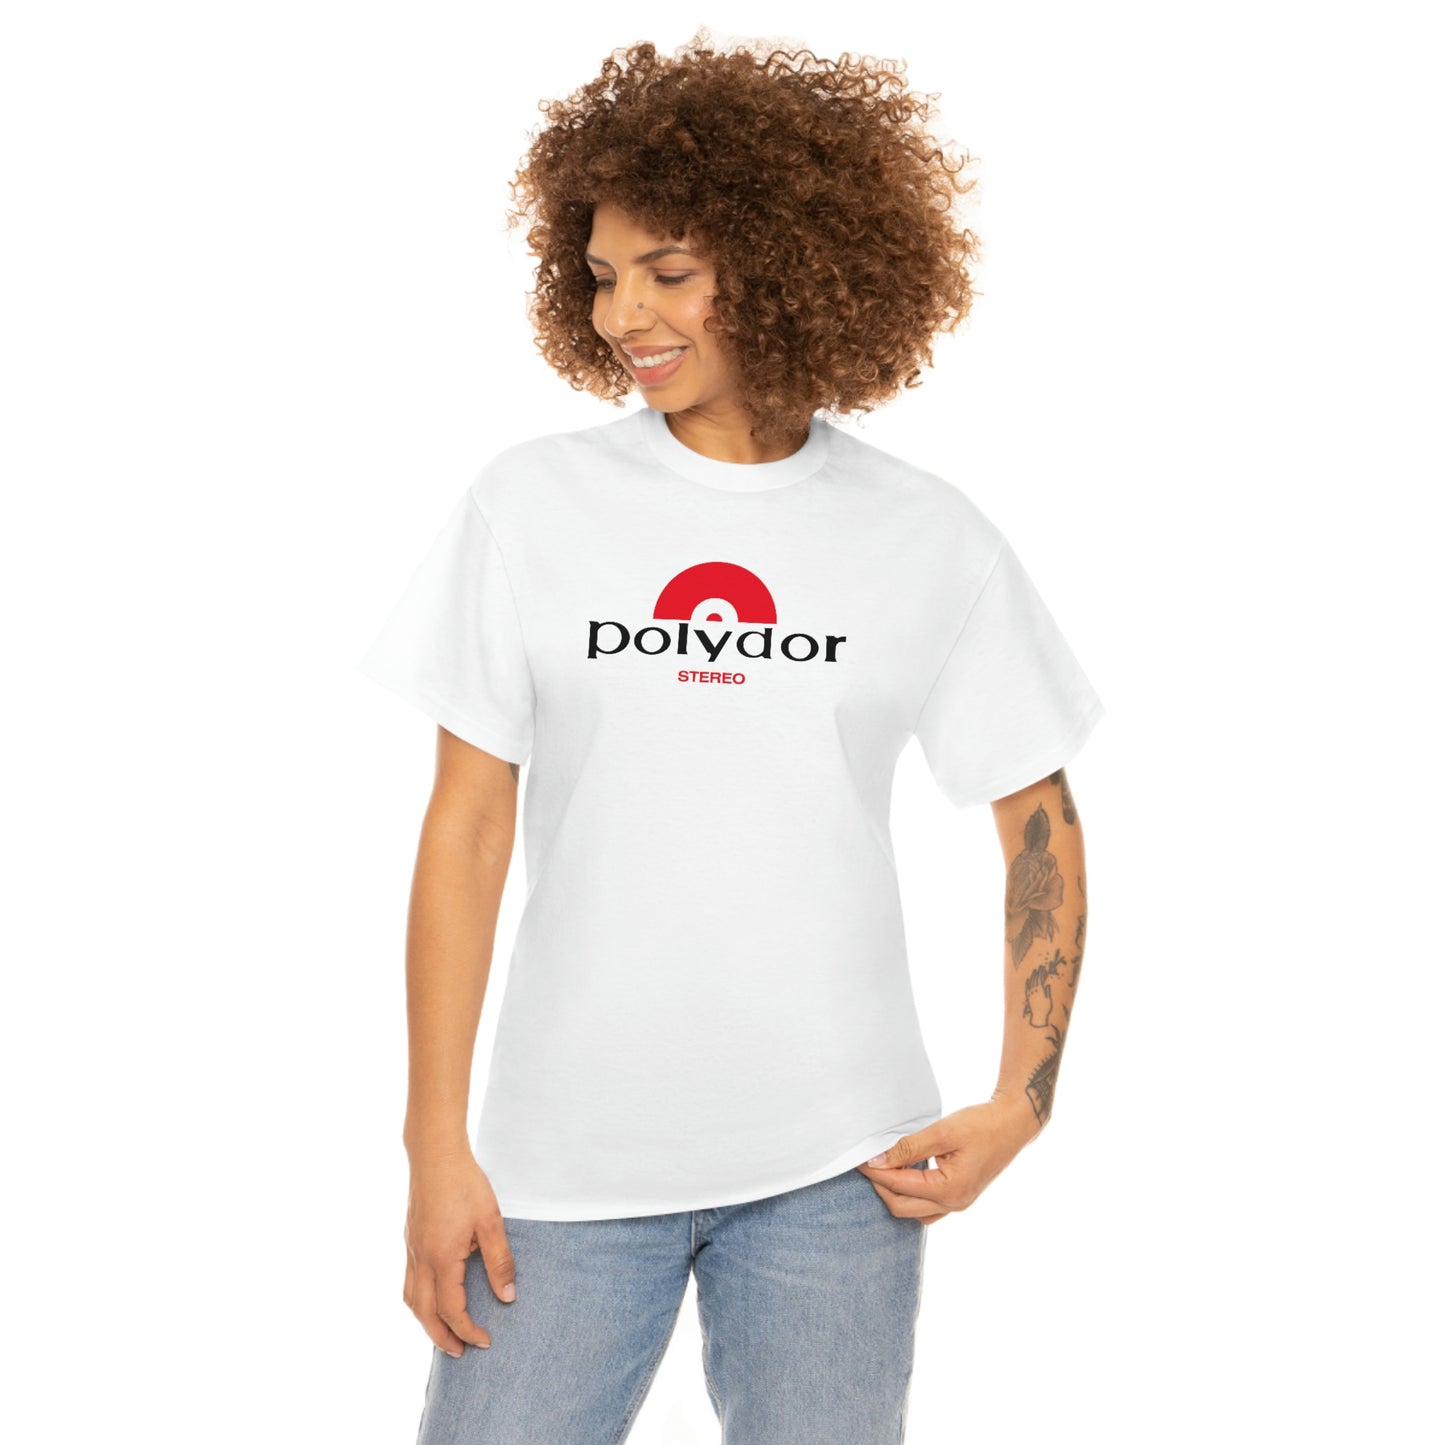 Polydore T-Shirt